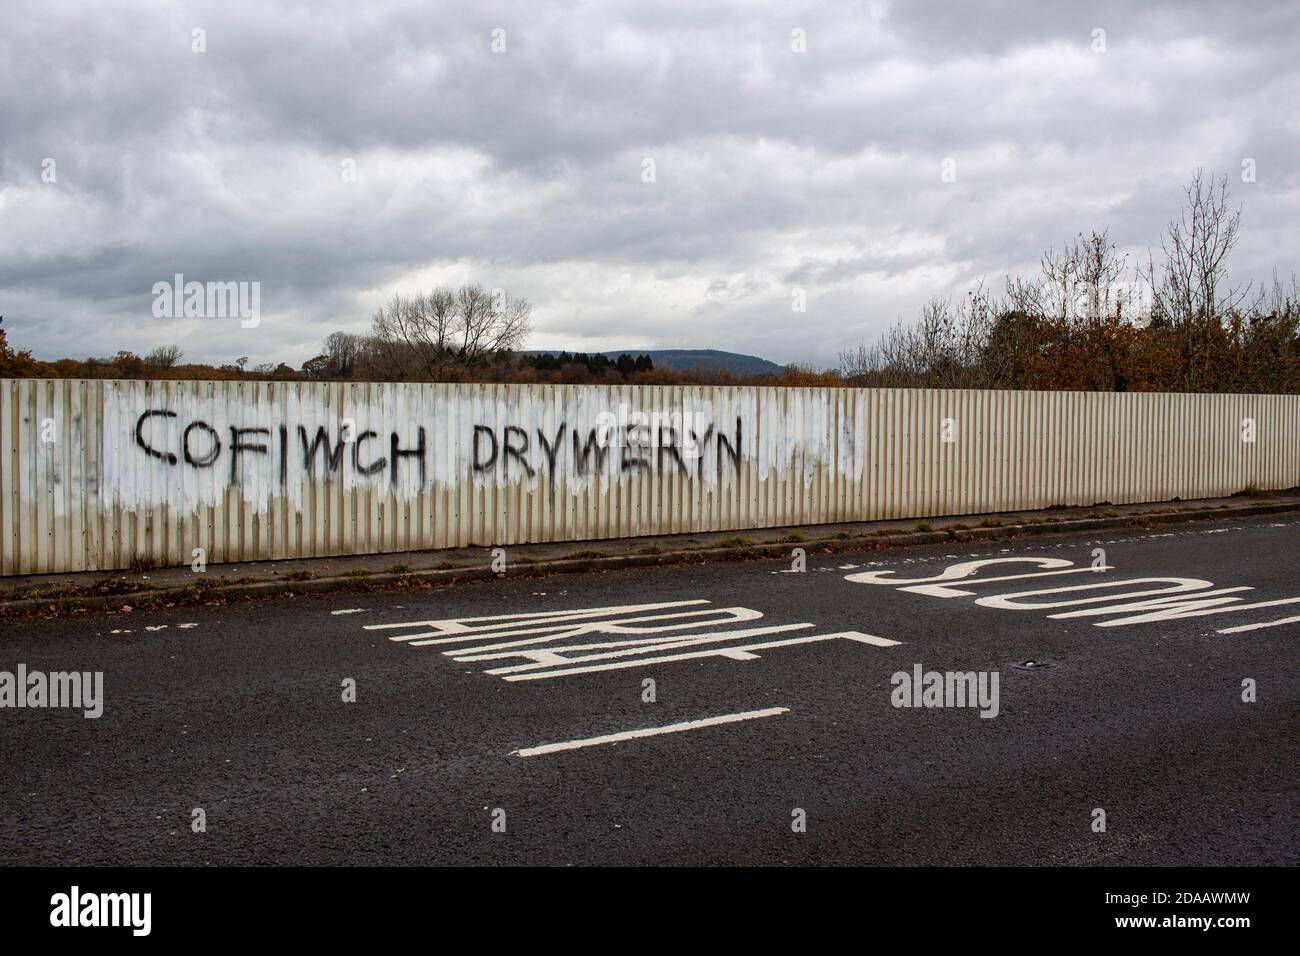 Cardiff, Galles, Regno Unito. 11 Nov 2020. Un messaggio recita 'Cofiwch Dryweryn' - Ricordati Tryweryn su un ponte vicino a Hensol, Galles. Credito: Lewis Mitchell Foto Stock